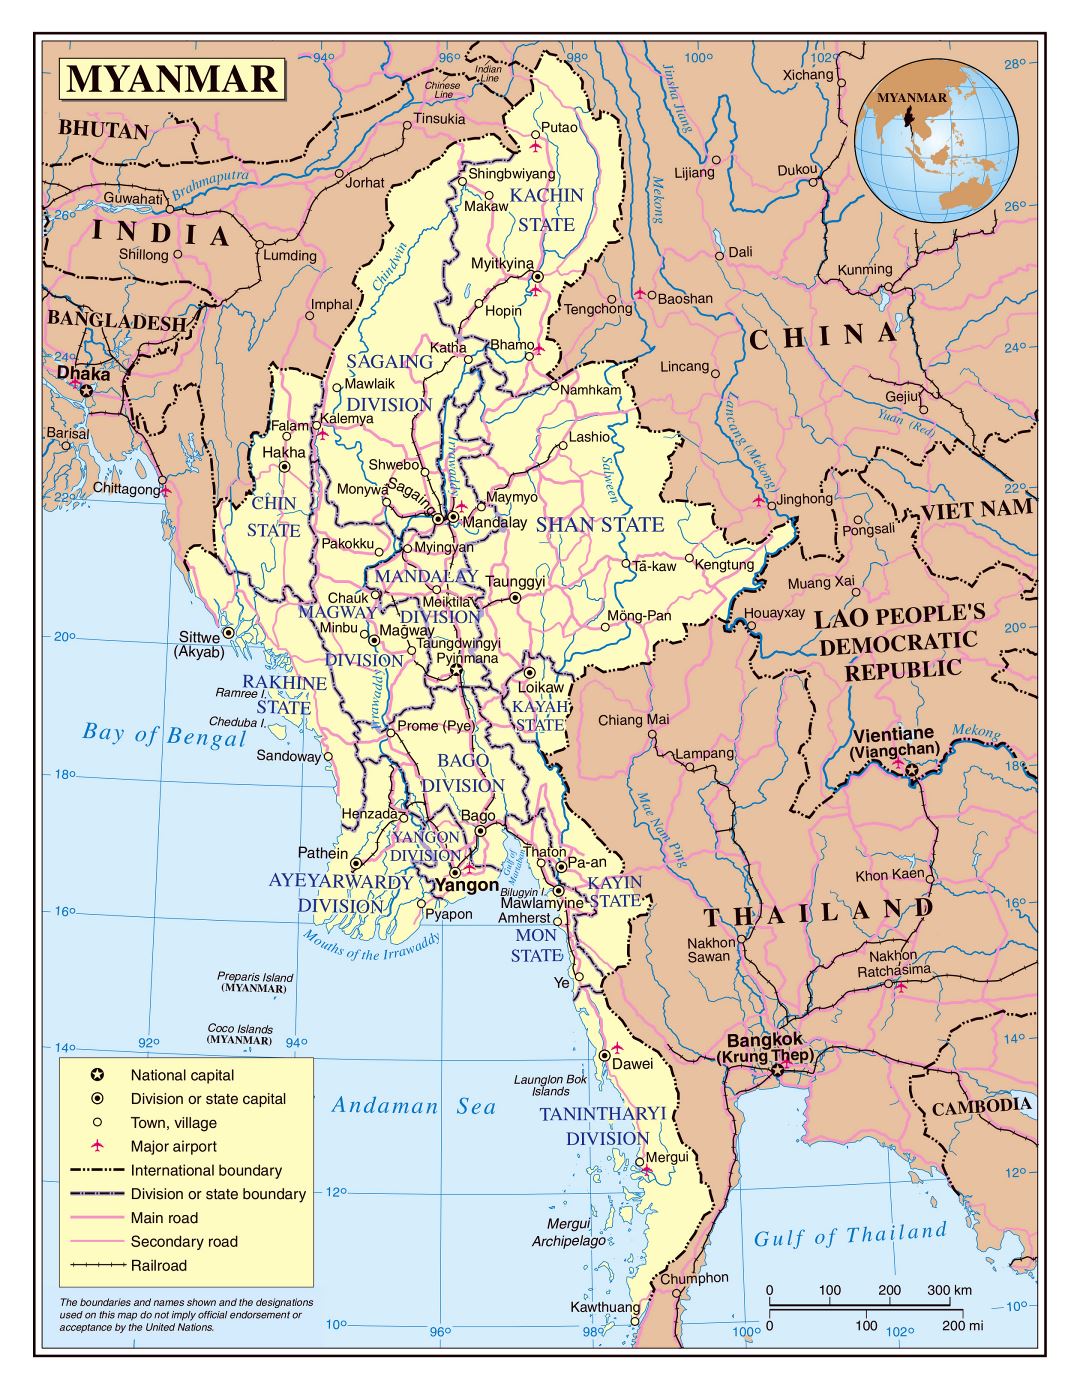 Grande detallado mapa político y administrativo de Myanmar con carreteras, ferrocarriles, ciudades y aeropuertos